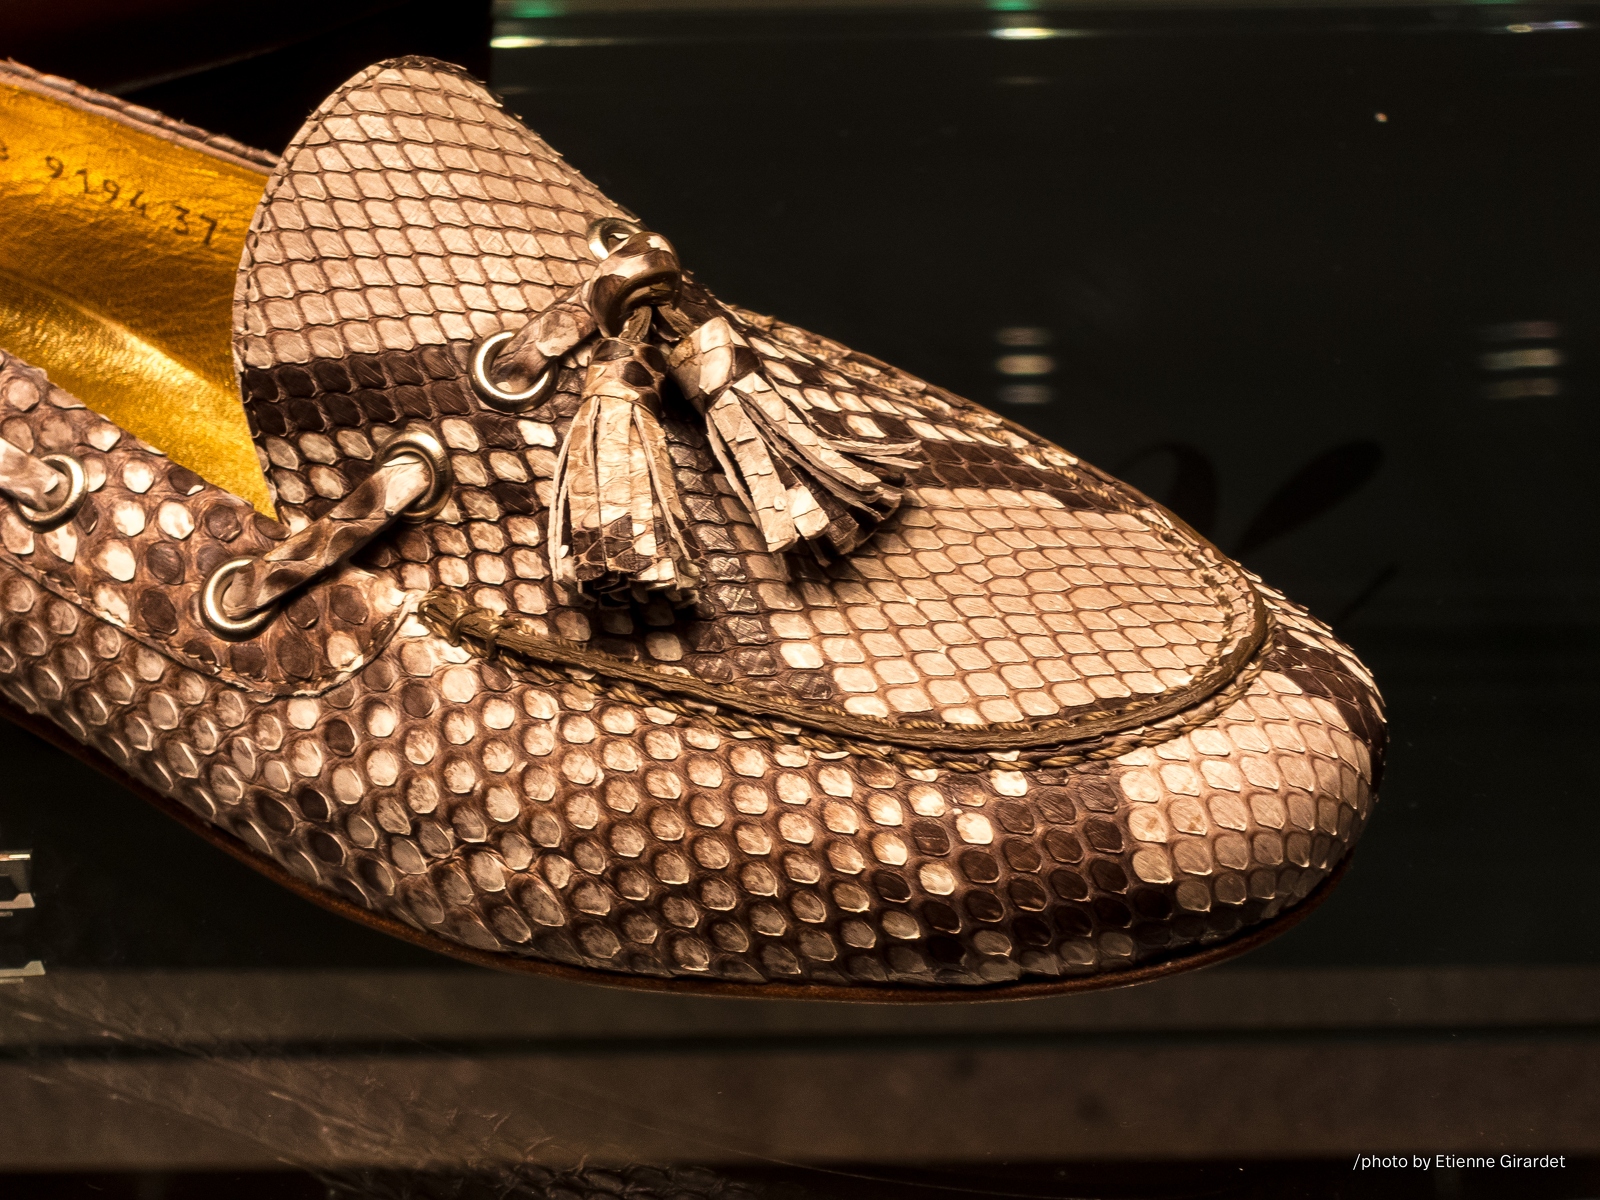 201302_24_IMG_3496-snake-skin-shoes-by-E-Girardet.jpg